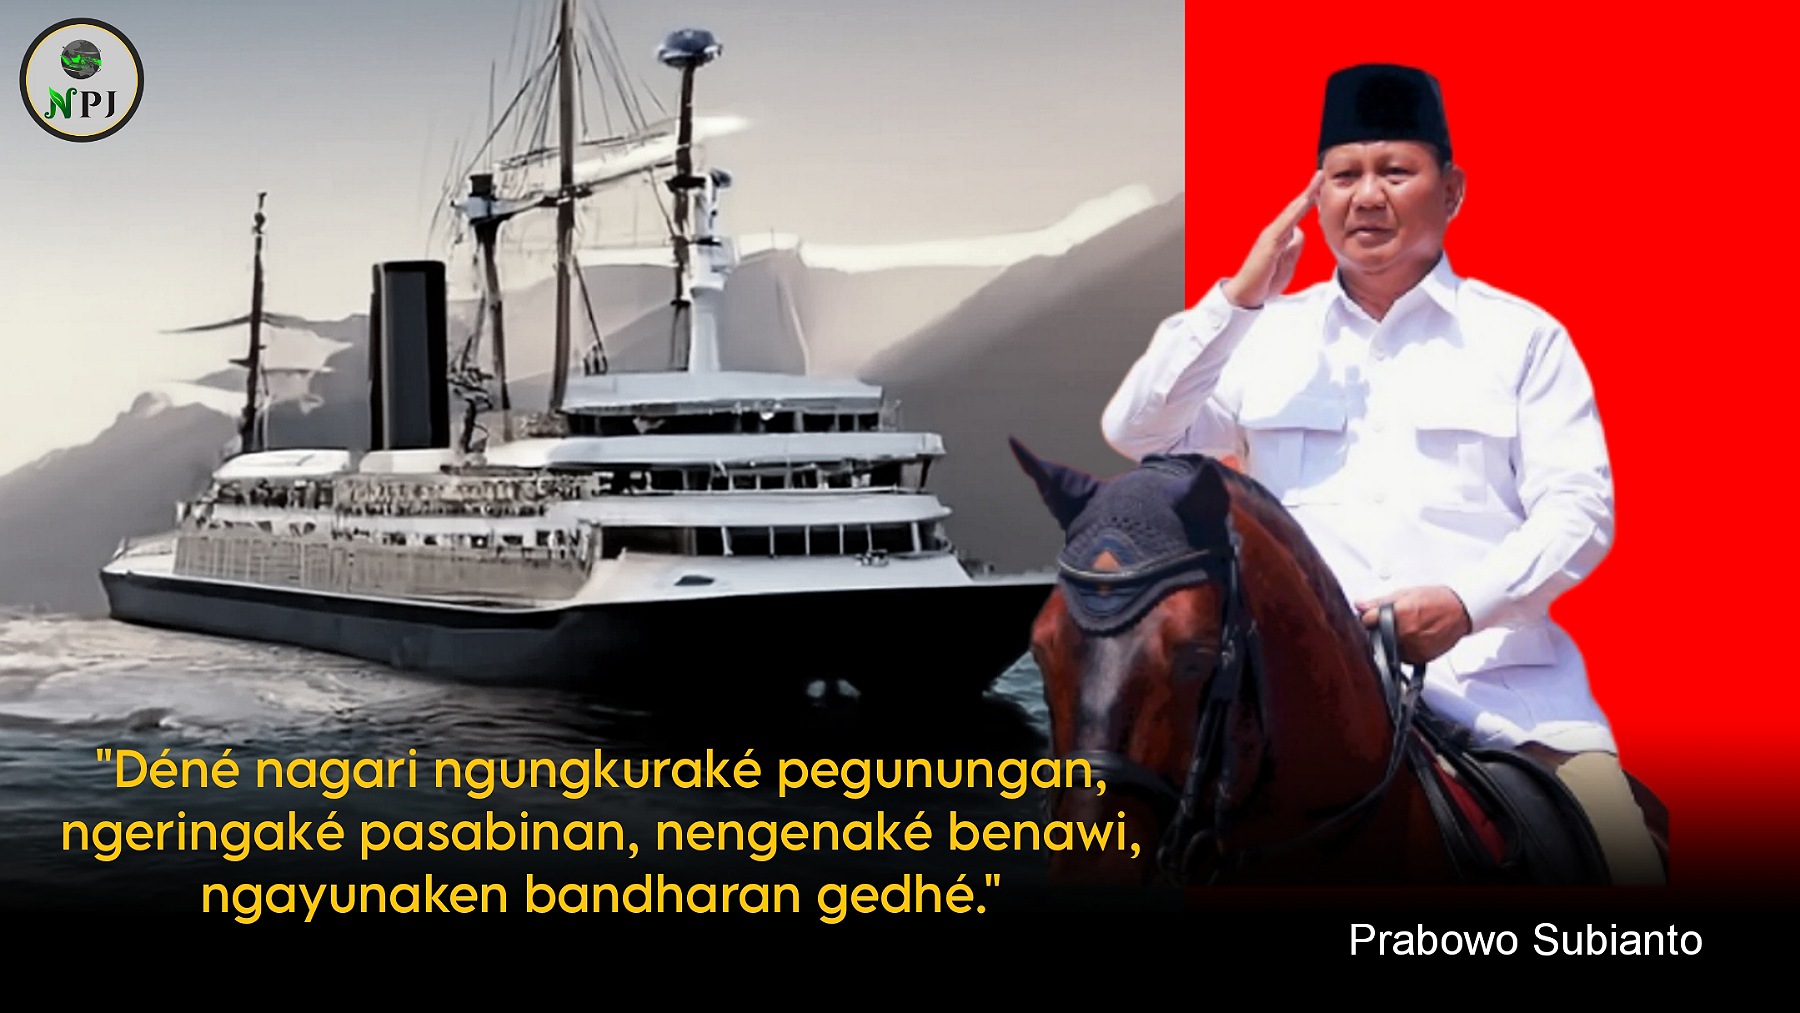 Segera, Prabowo Kembali Bertani dan Melaut!